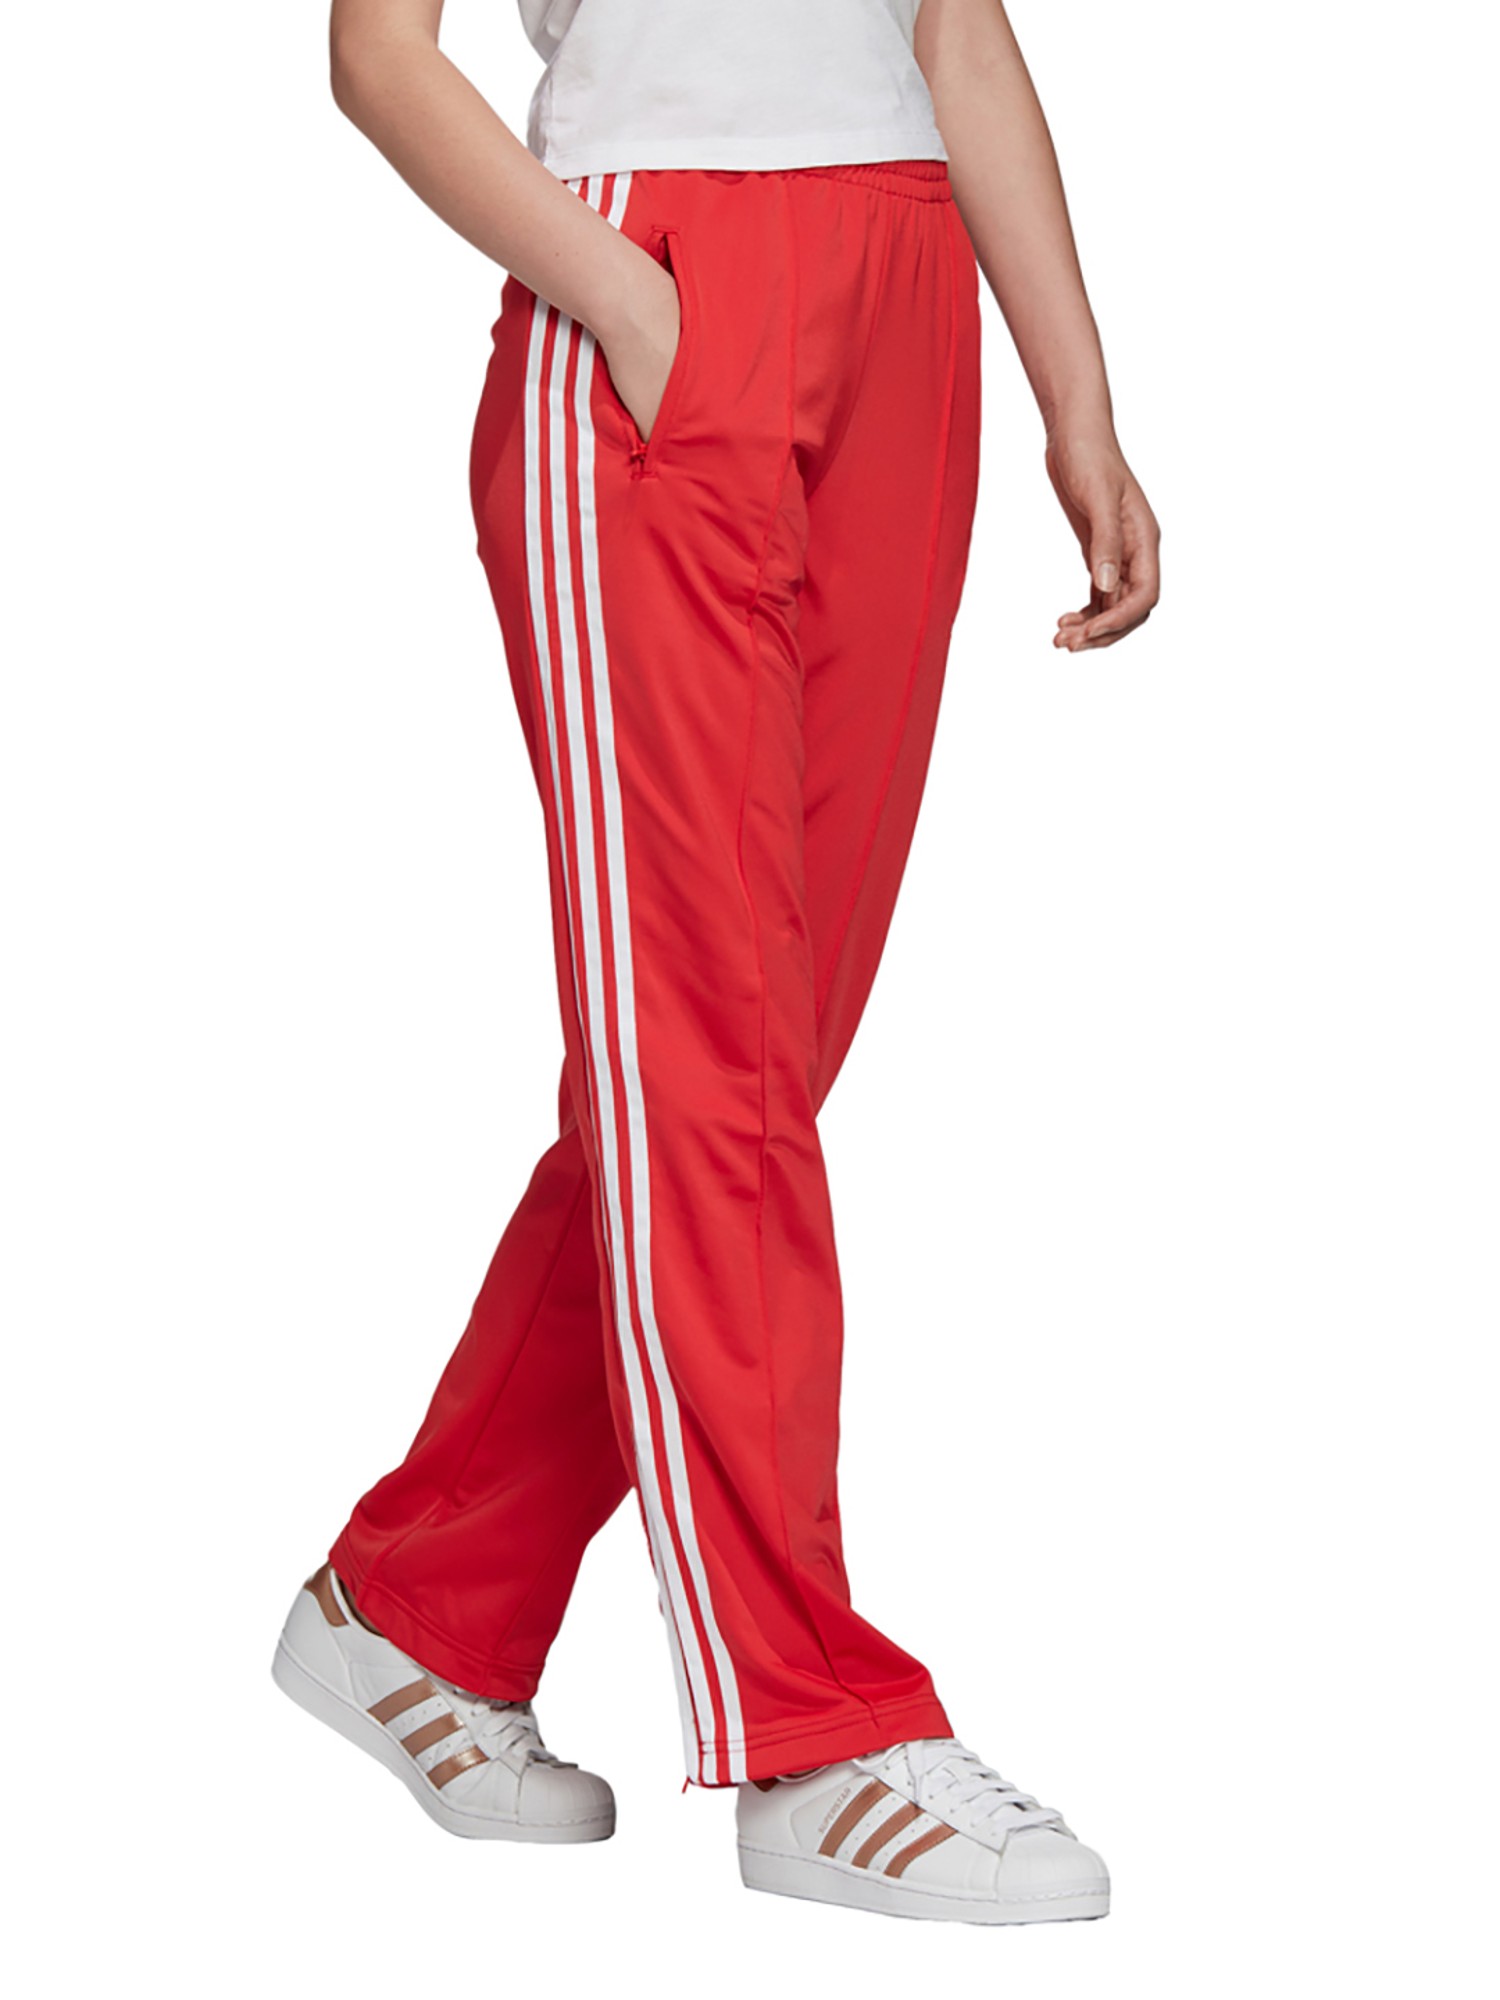 adidas Originals adicolor 70s unisex flared pants in red  ASOS